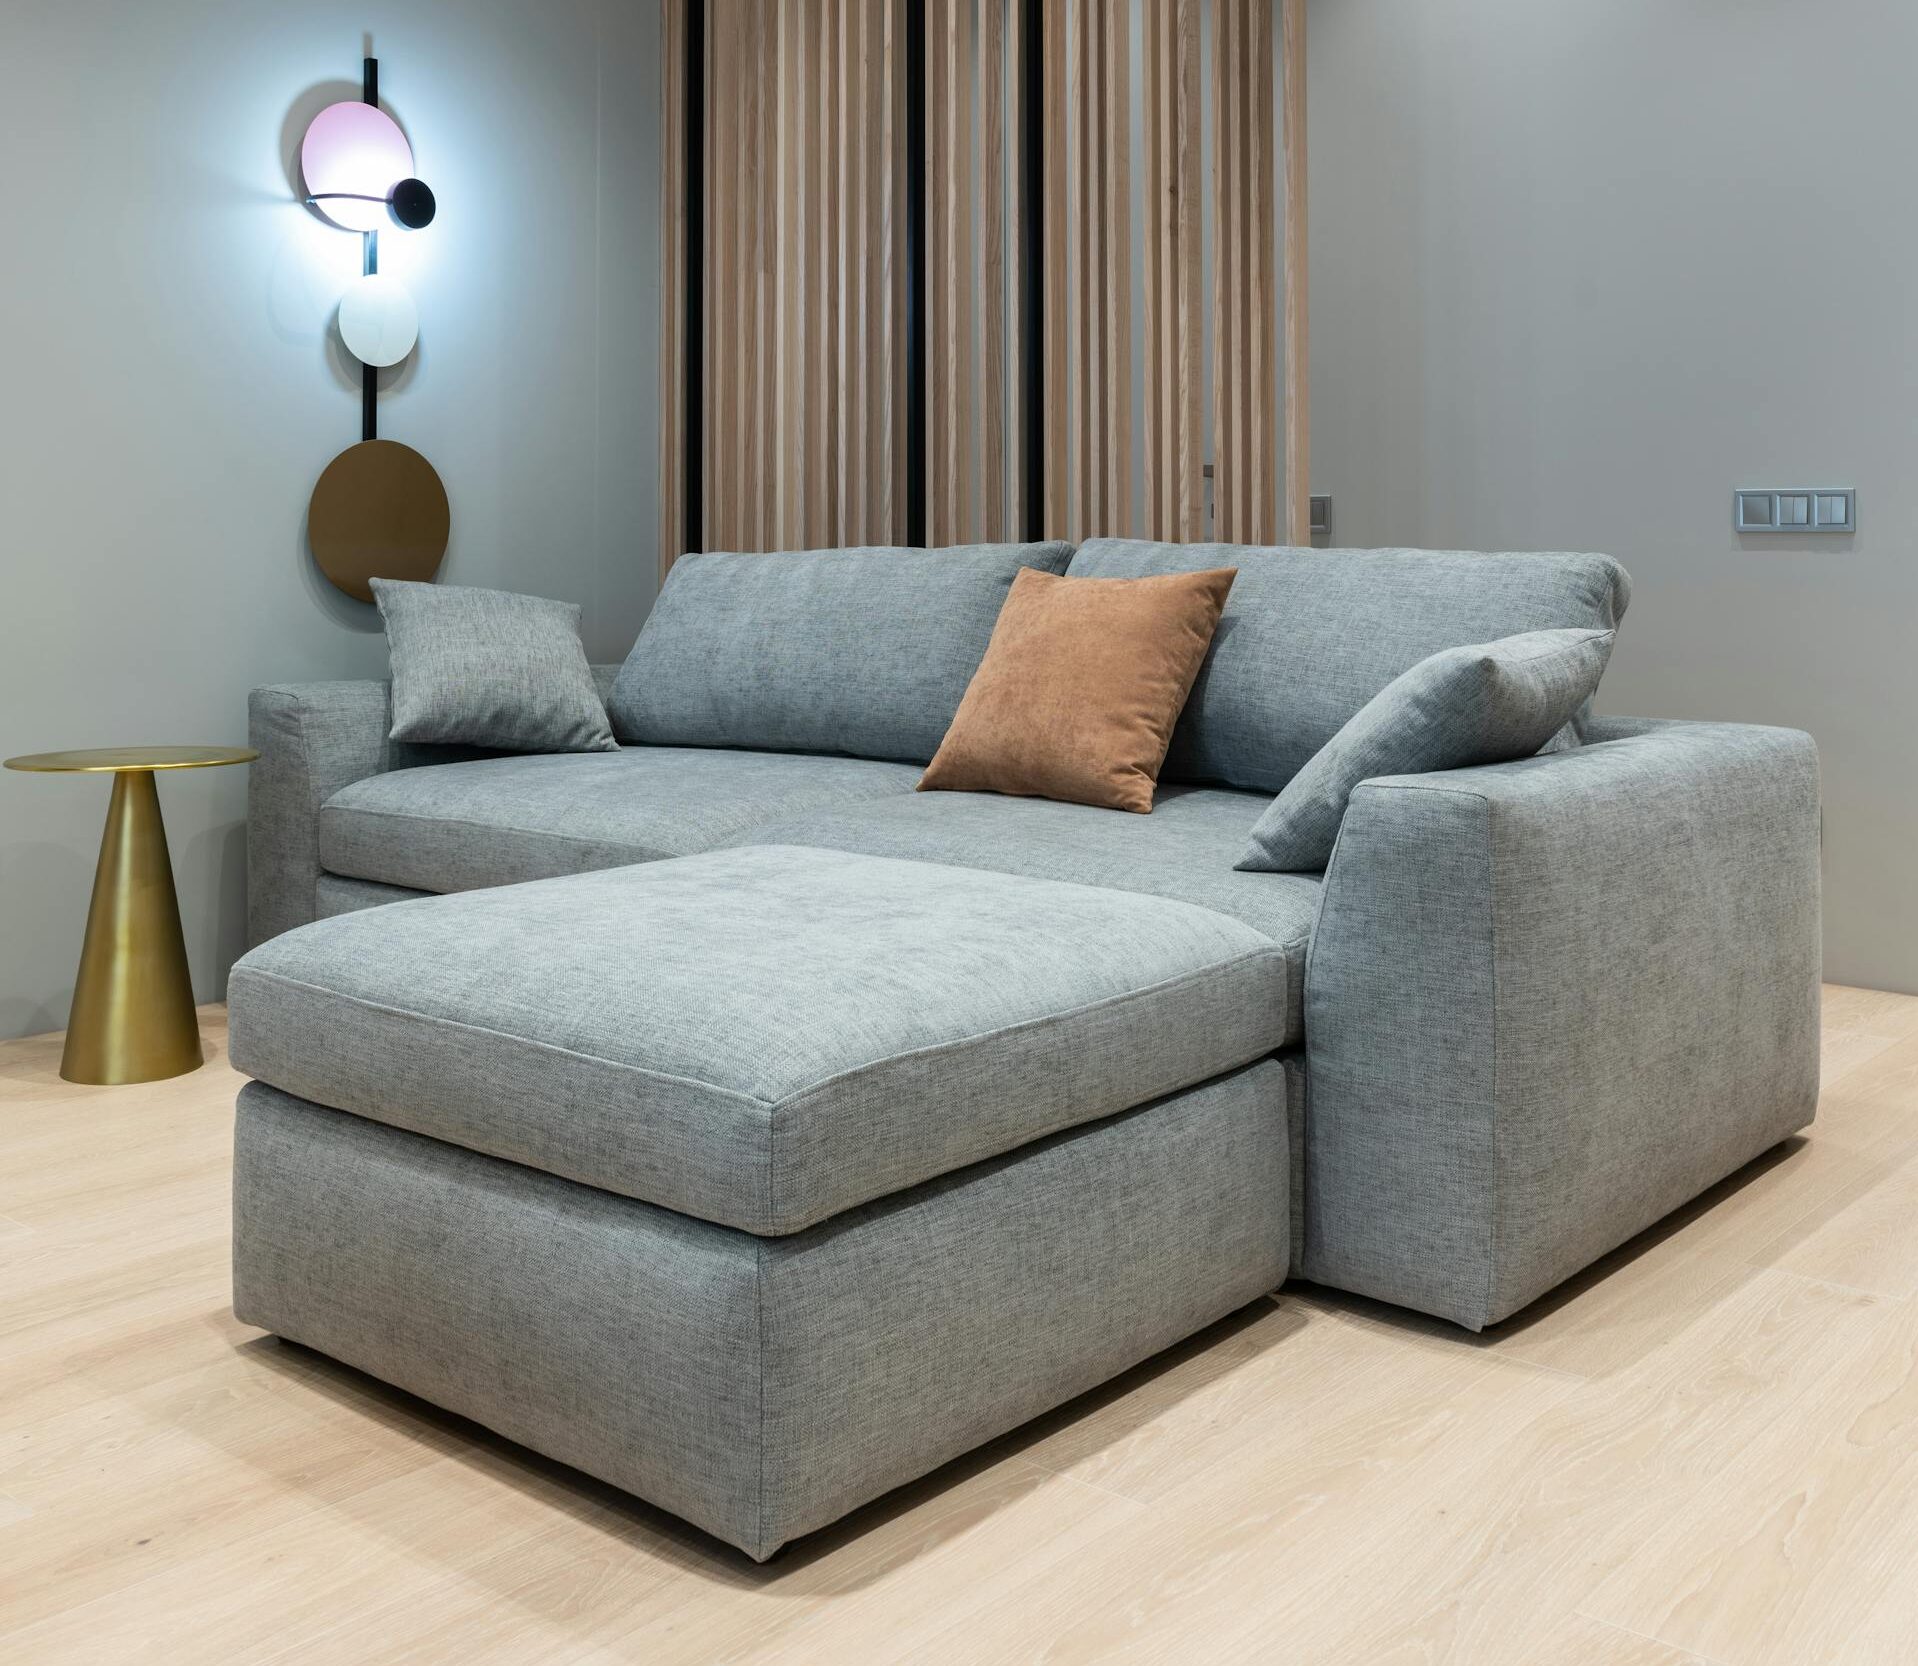 Como escolher o sofá mais confortável para minha casa?